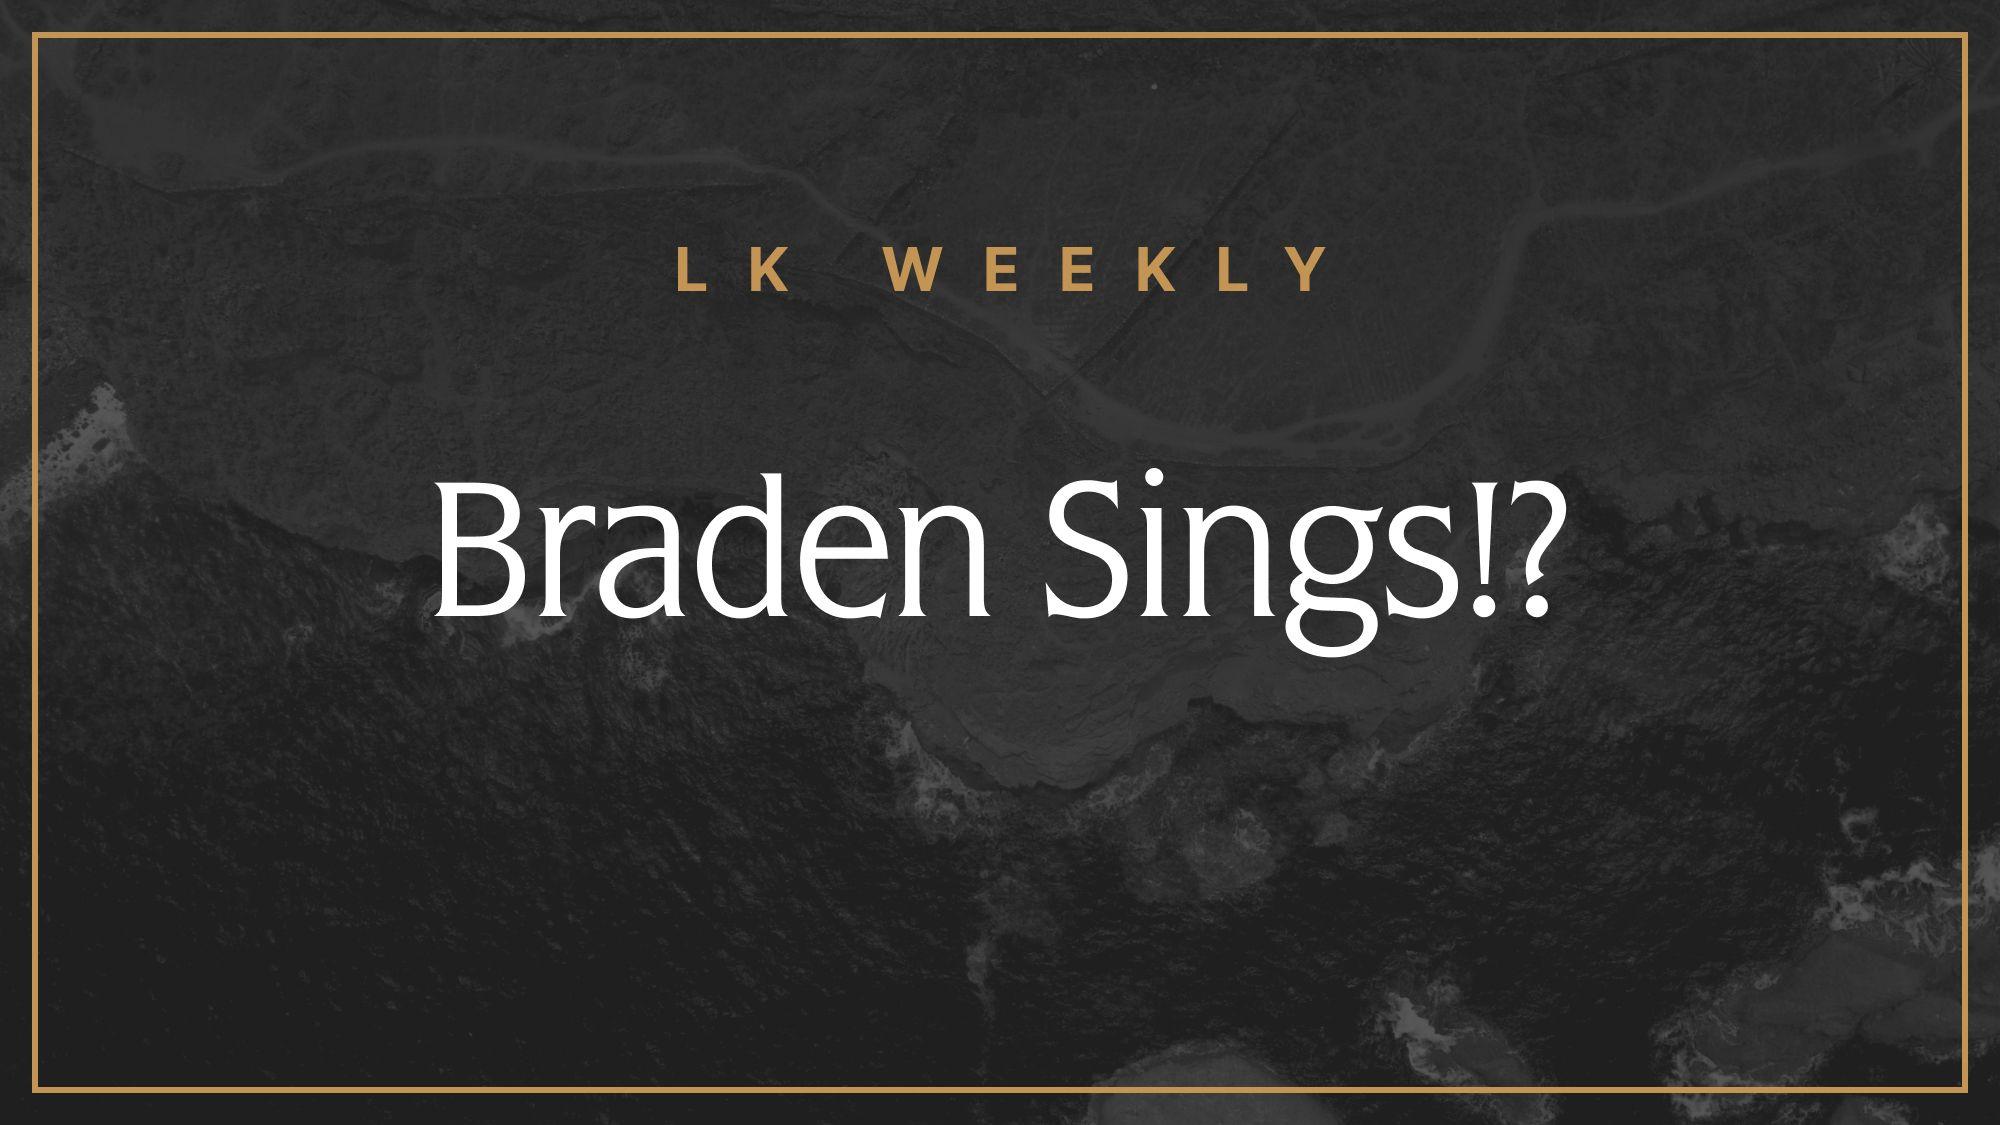 LK Weekly: Braden sings!?